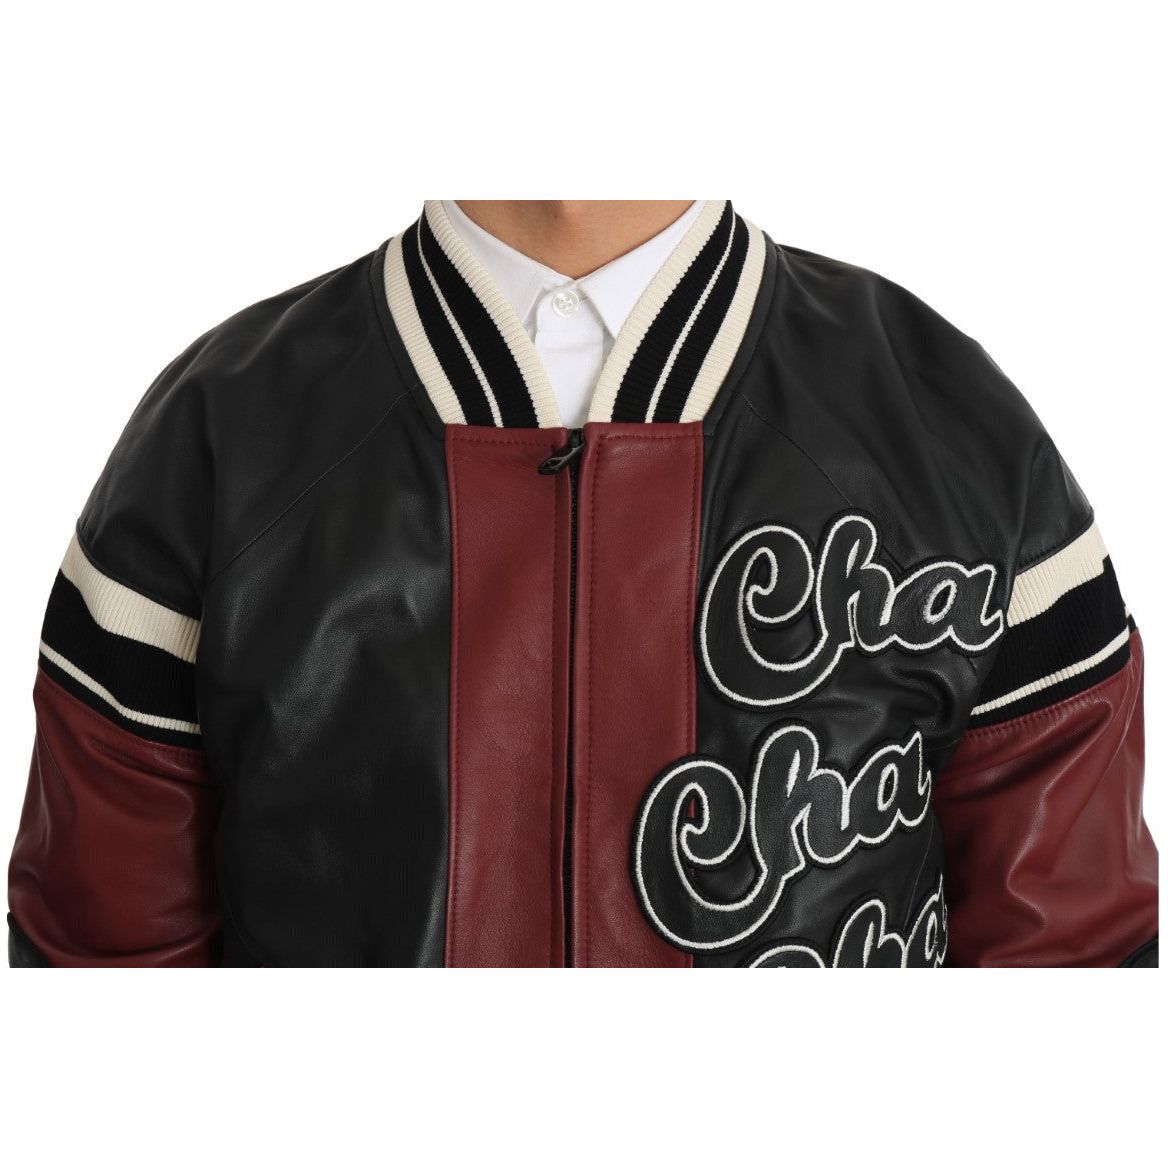 Dolce & Gabbana Exquisite Sheepskin Leather Bomber Jacket MAN COATS & JACKETS leather-club-lounge-black-red-jacket